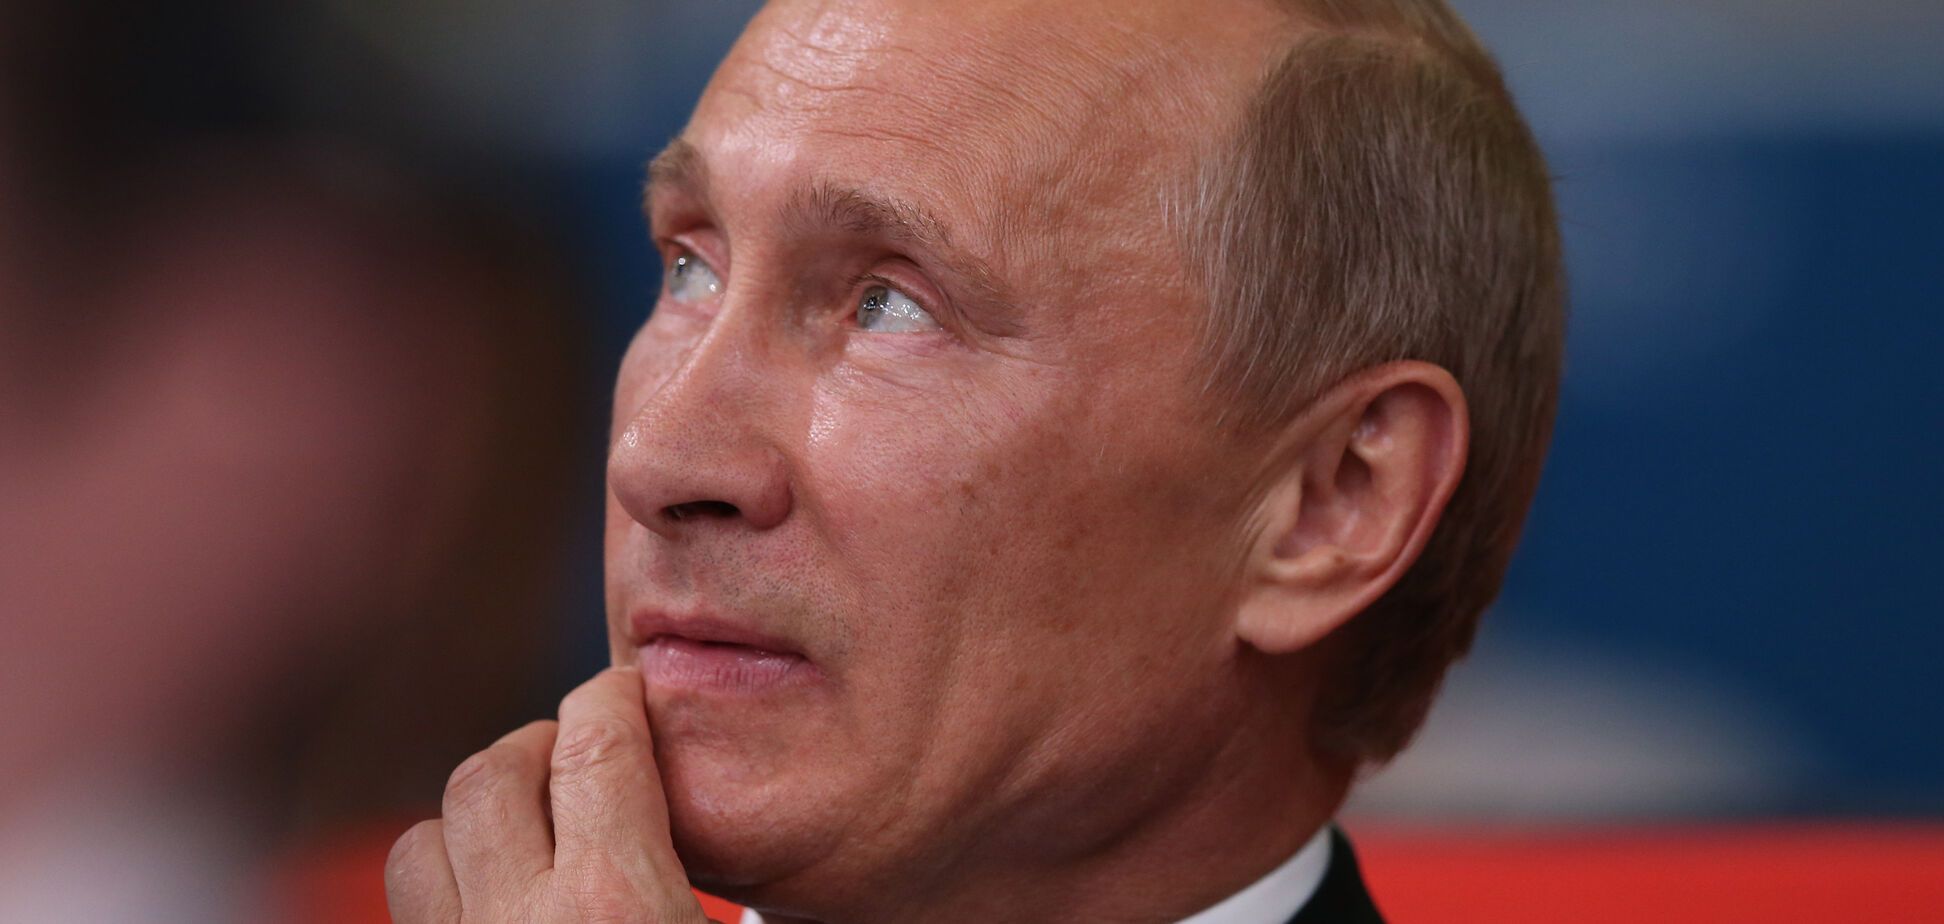 США нанесли удар под дых Путину: пострадало близкое окружение президента РФ